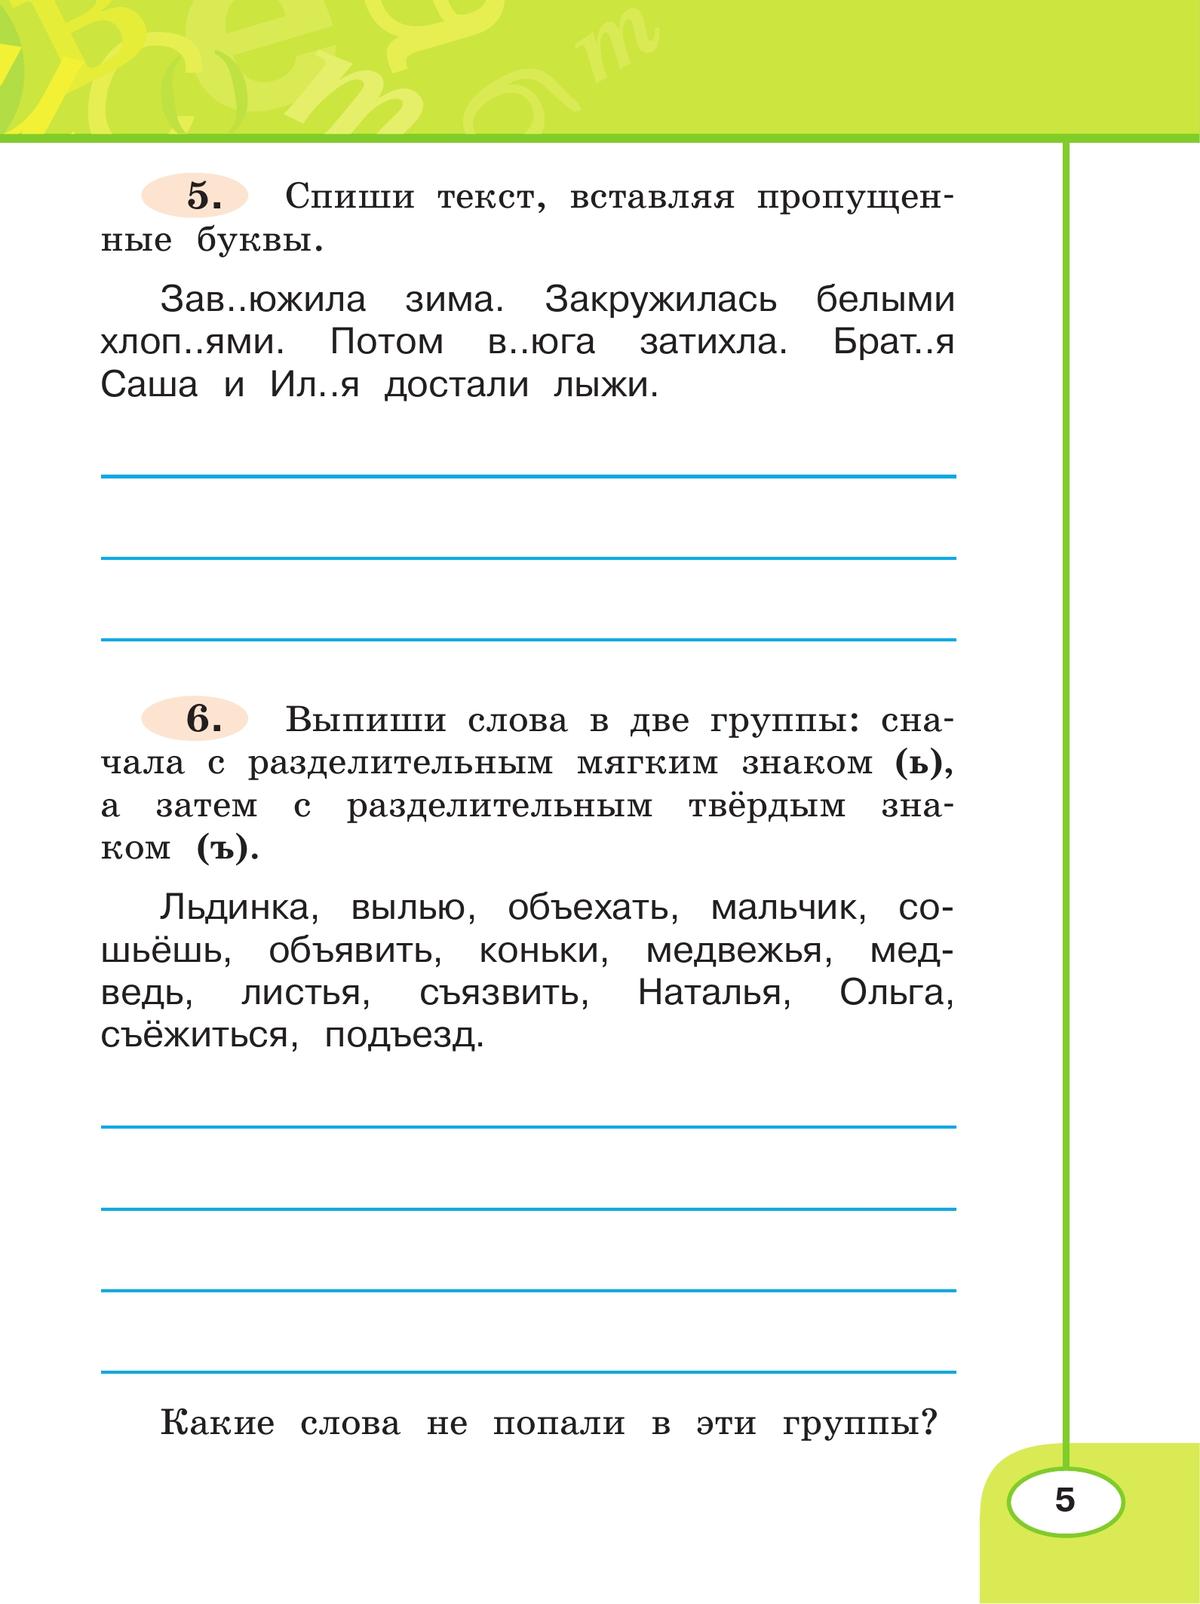 Русский язык. Рабочая тетрадь. 2 класс. В 2-х ч. Ч. 2 4